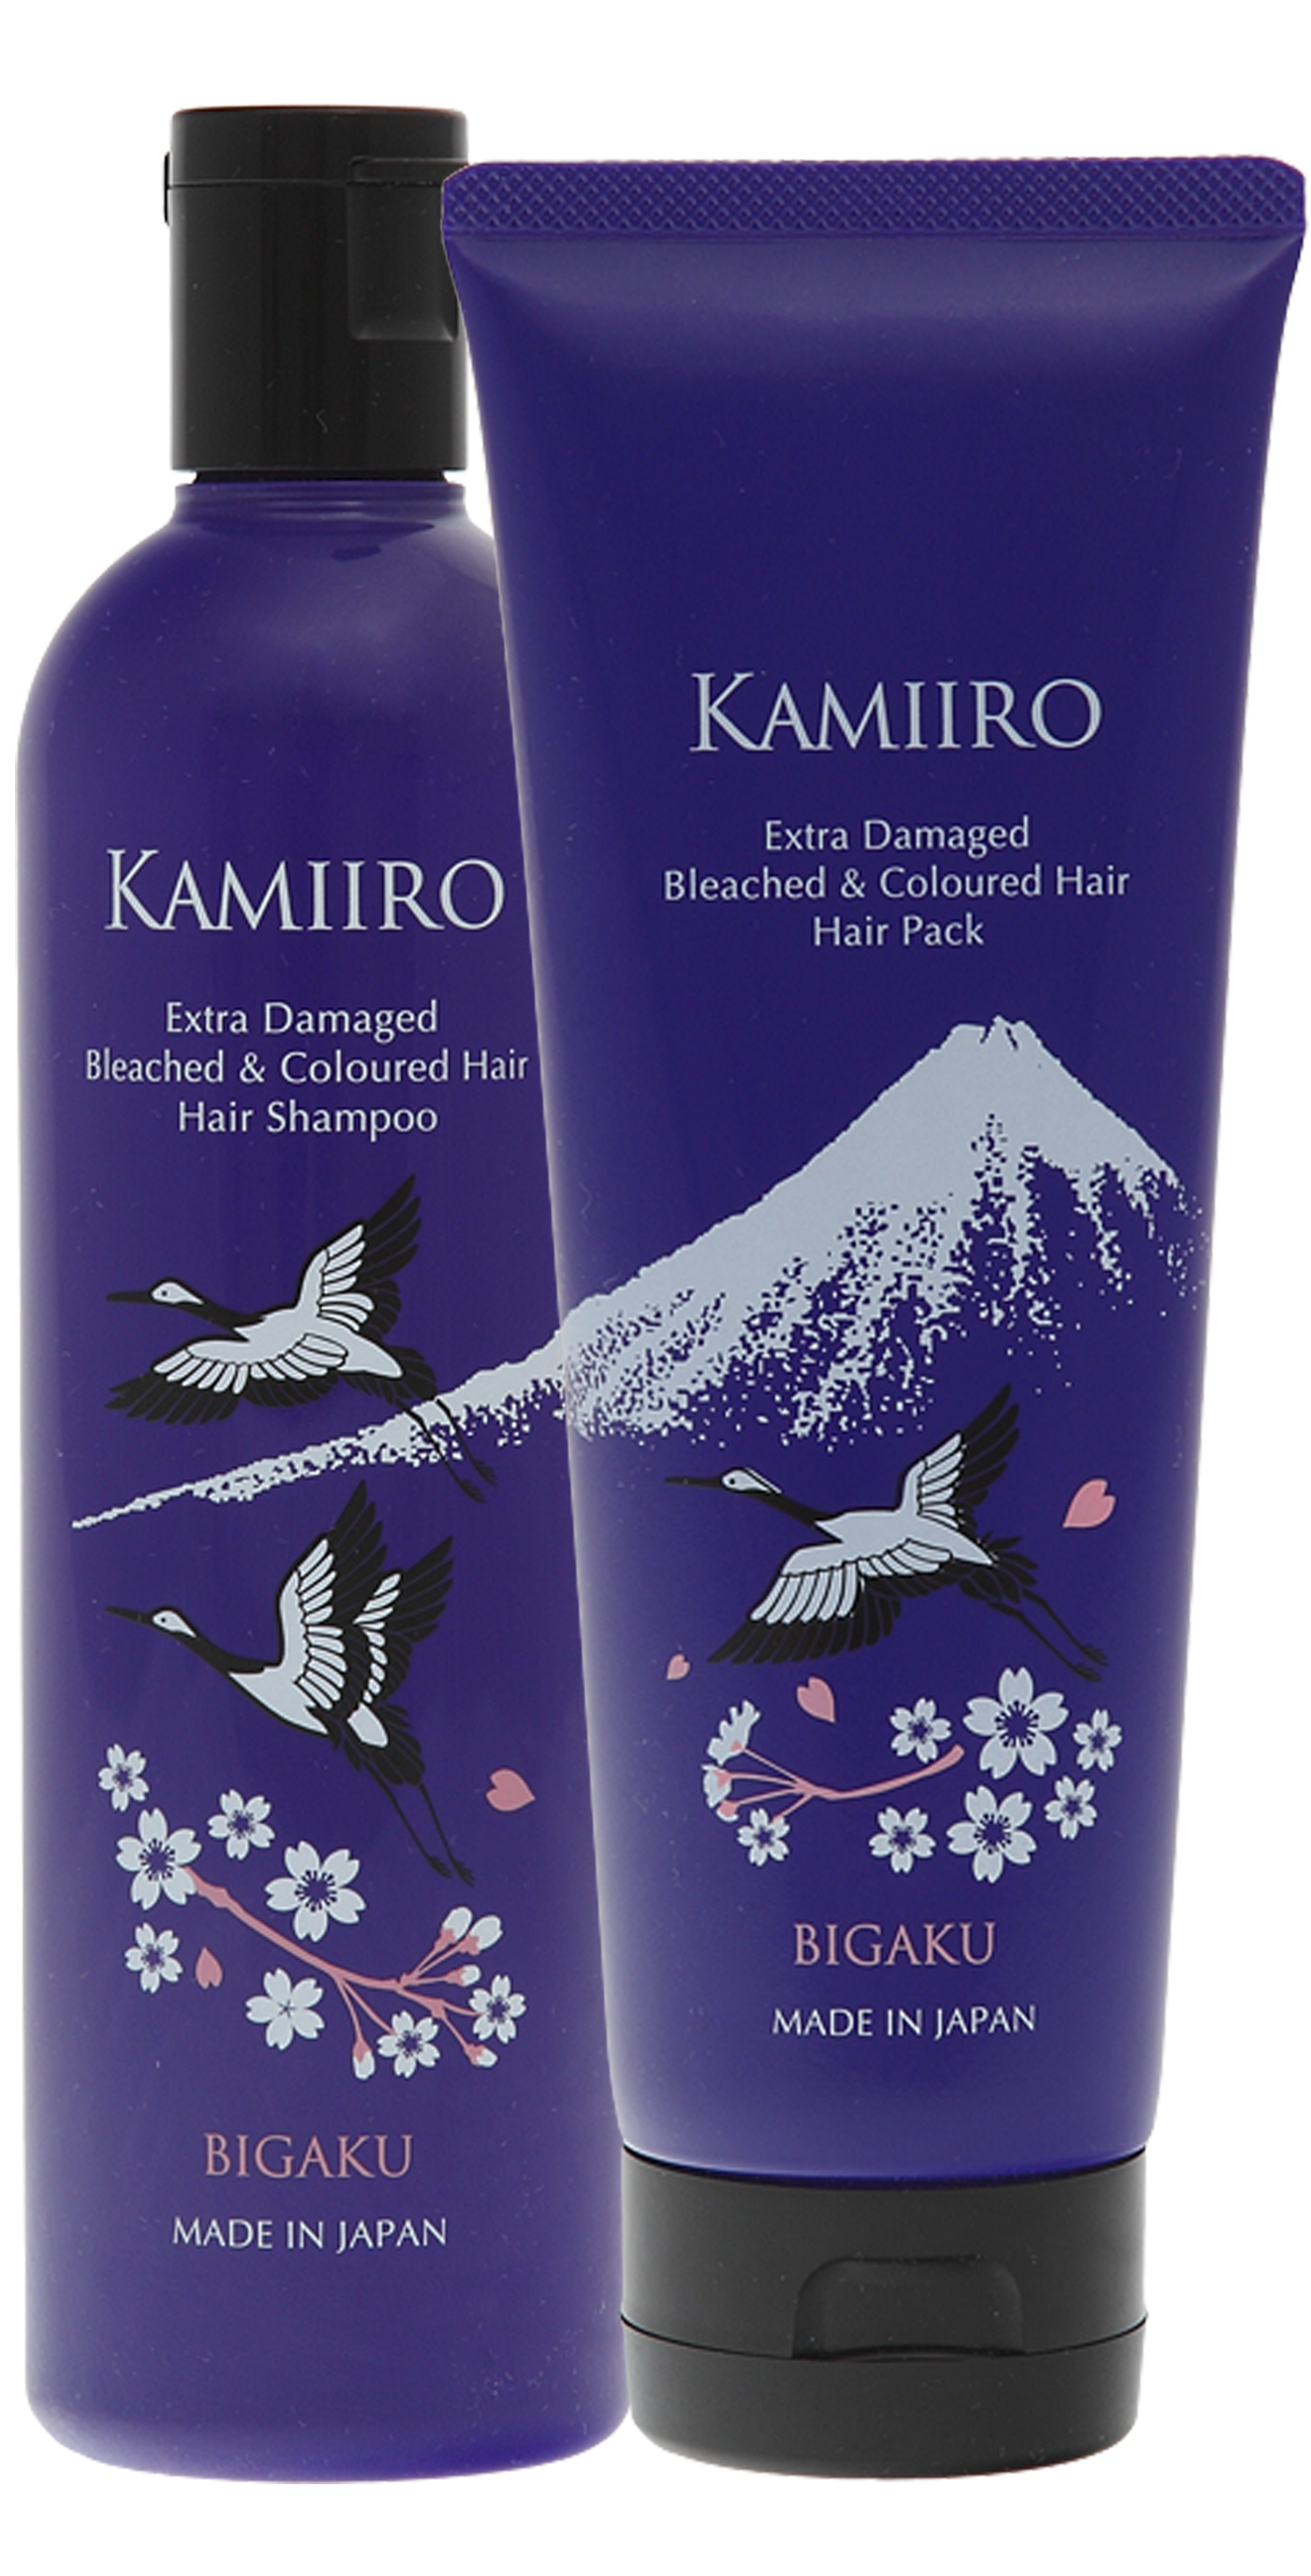 Kamiiro Extra Damaged набор шампунь и маска для окрашенных и осветленных волос, 330мл + 250г